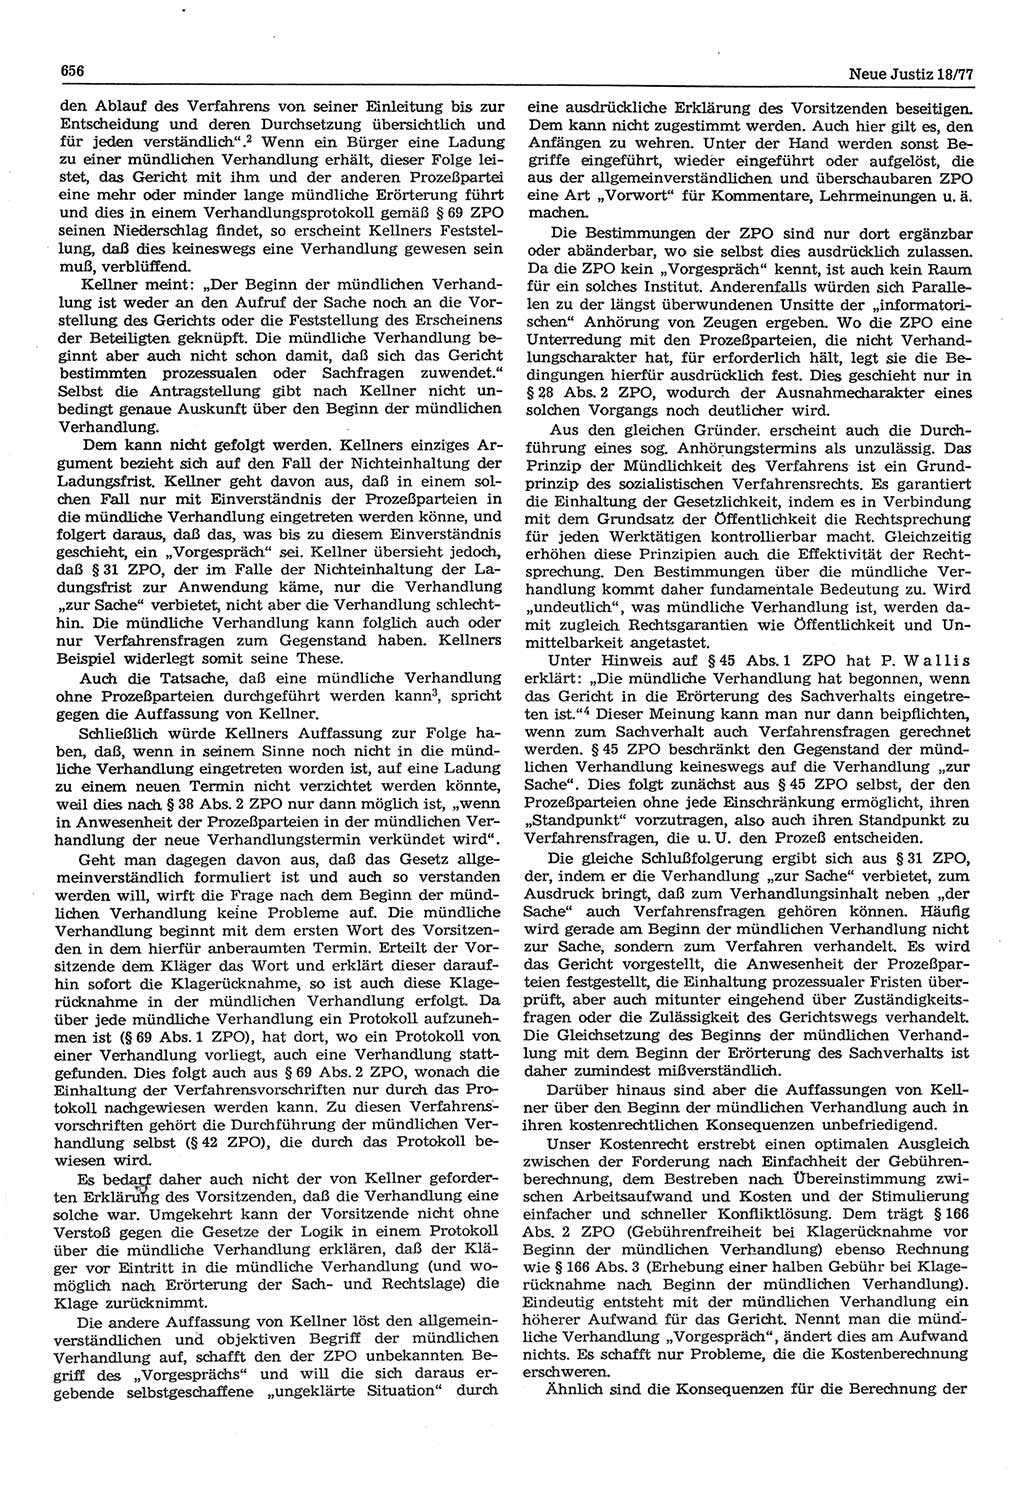 Neue Justiz (NJ), Zeitschrift für Recht und Rechtswissenschaft-Zeitschrift, sozialistisches Recht und Gesetzlichkeit, 31. Jahrgang 1977, Seite 656 (NJ DDR 1977, S. 656)